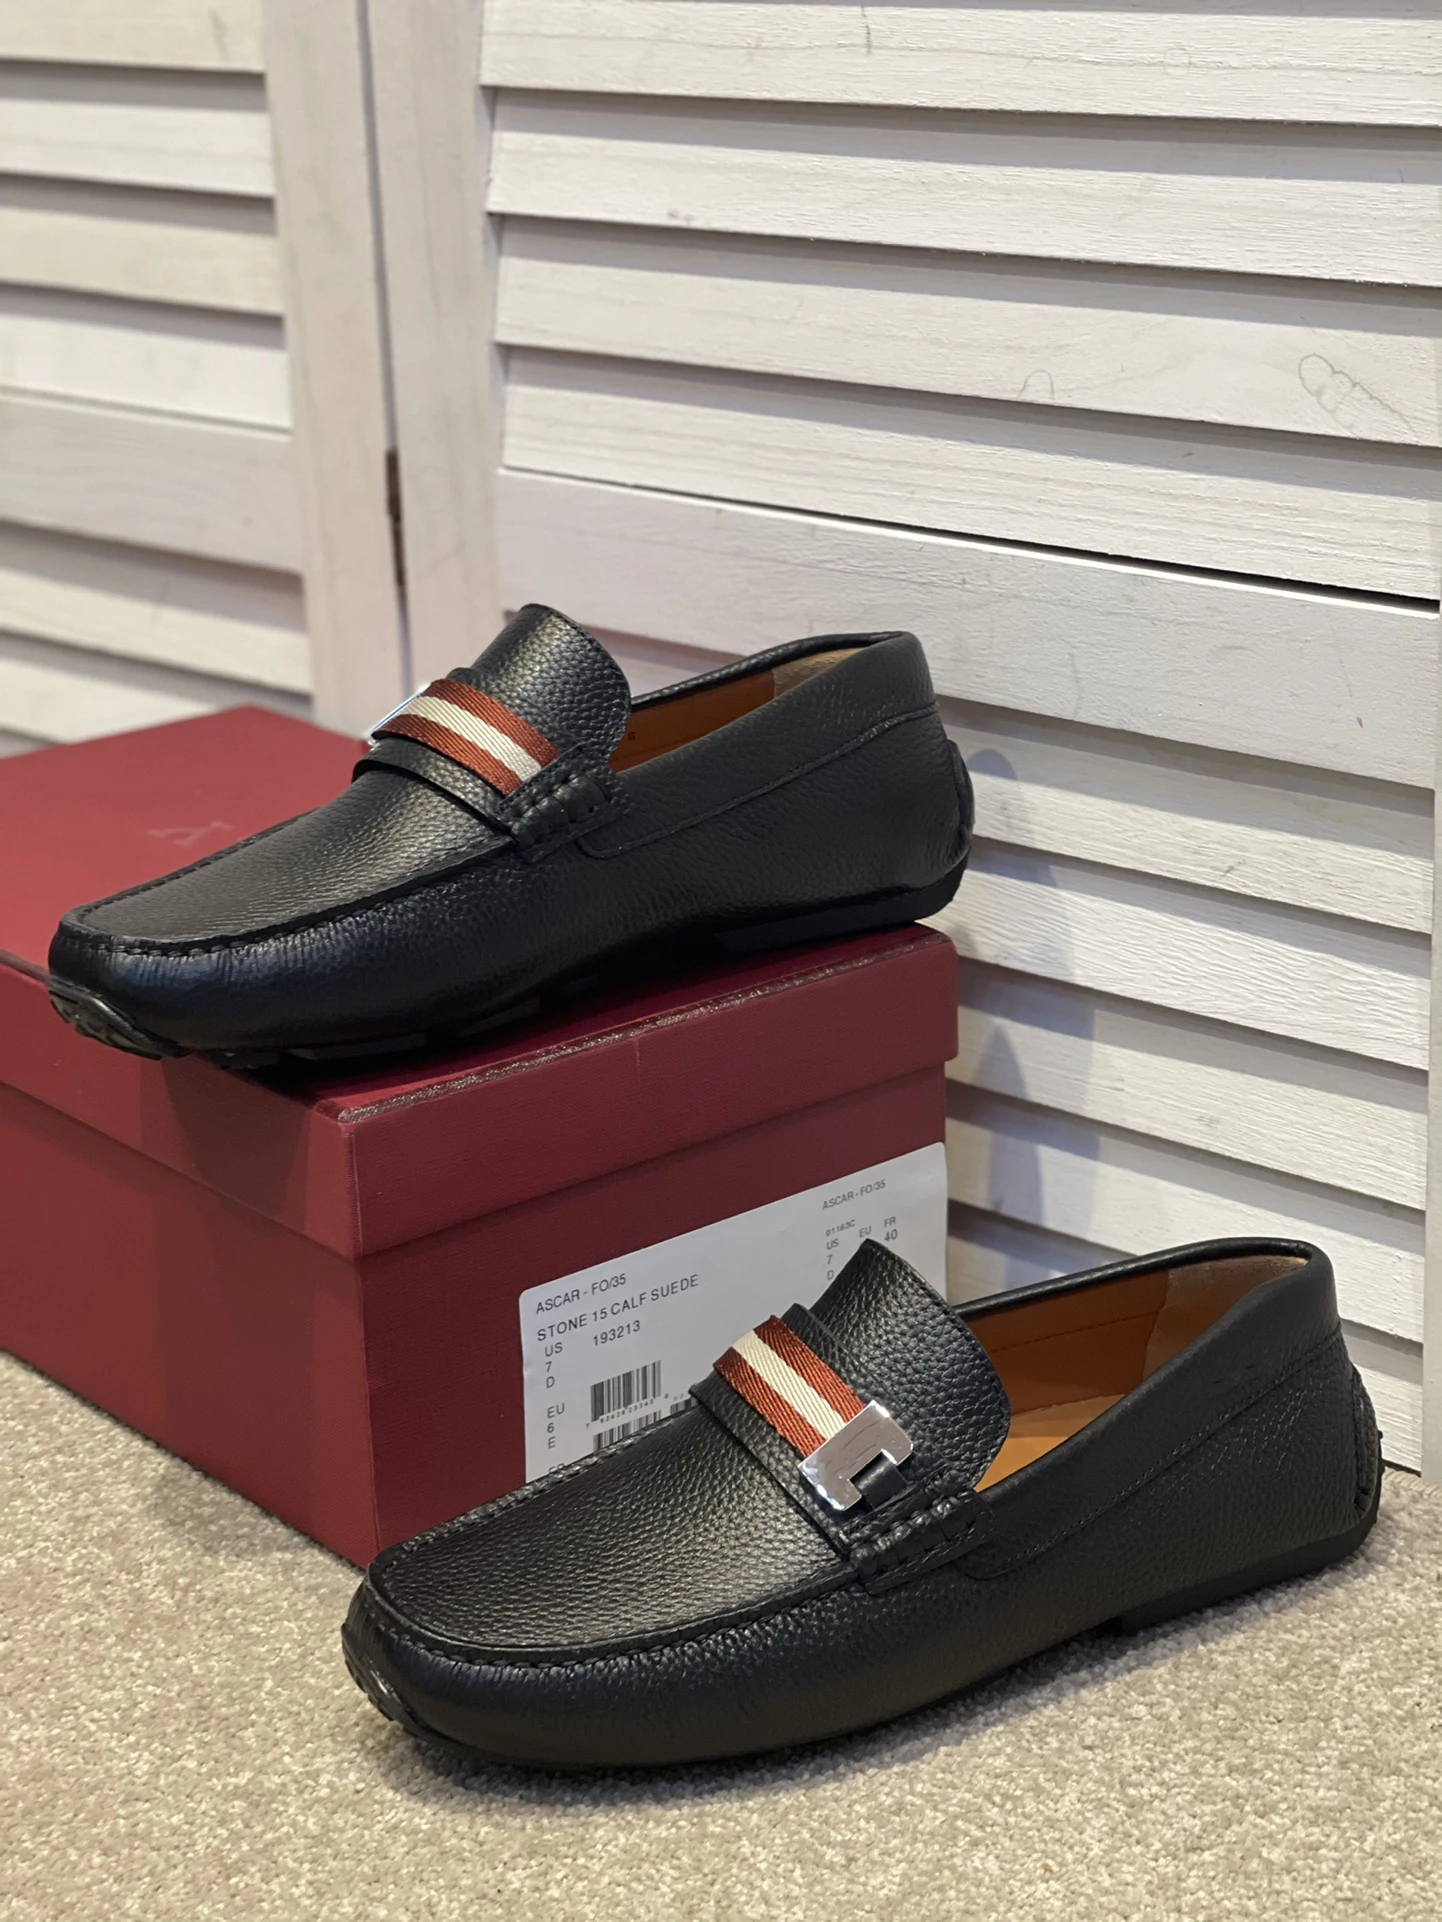 

Новые Классические мужские туфли, обувь для вождения, уникальный фирменный дизайн логотипа, красный и белый цвета